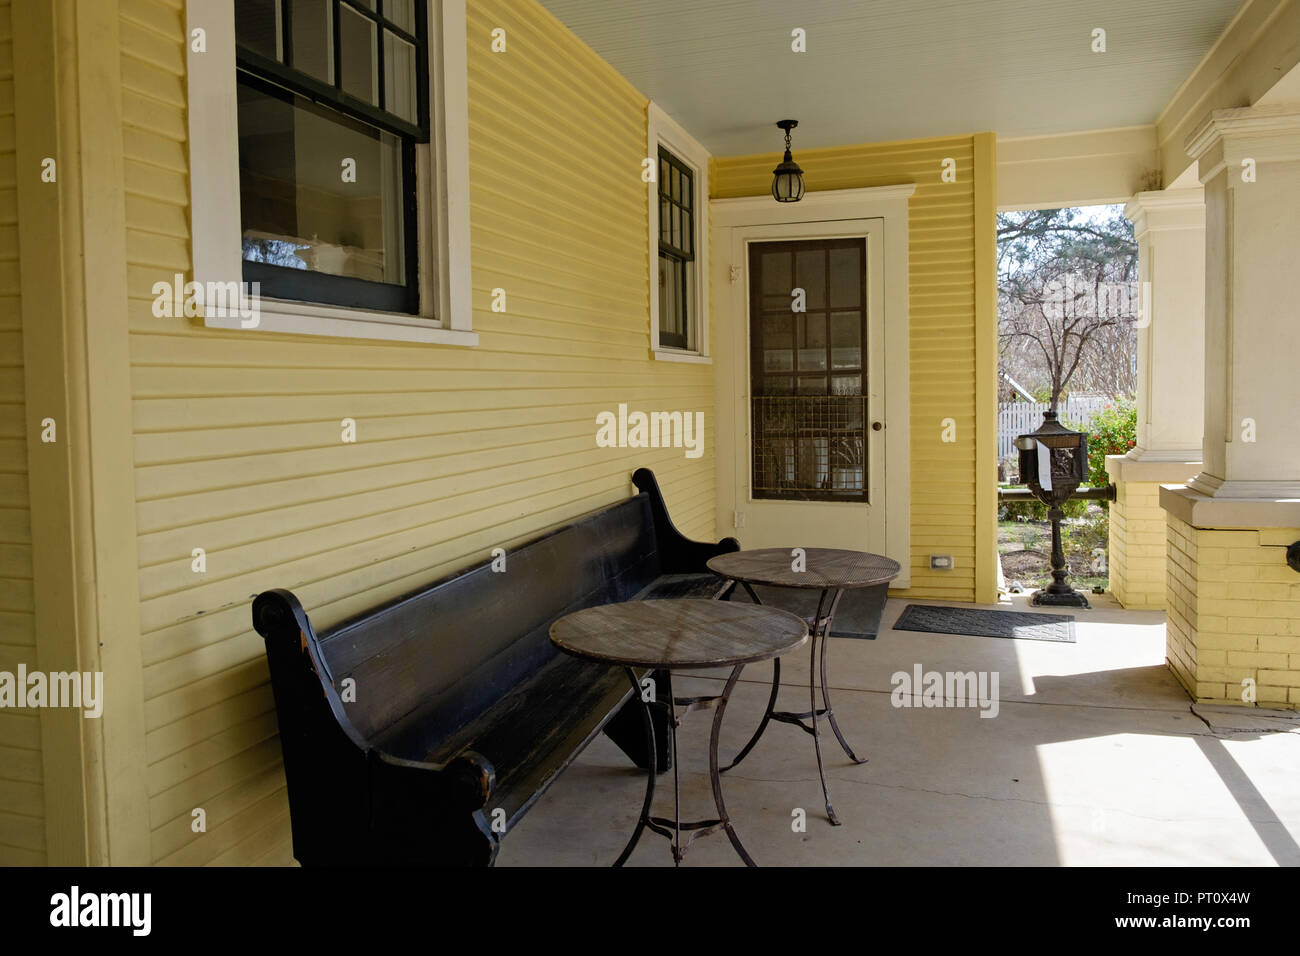 Casa histórica veransa, largo banco de madera y dos mesas redondas. Las tejas y ladrillos amarillos. Casa Dulaney Plaza Castaño Villa Histórica, McKinney, Texas. Foto de stock